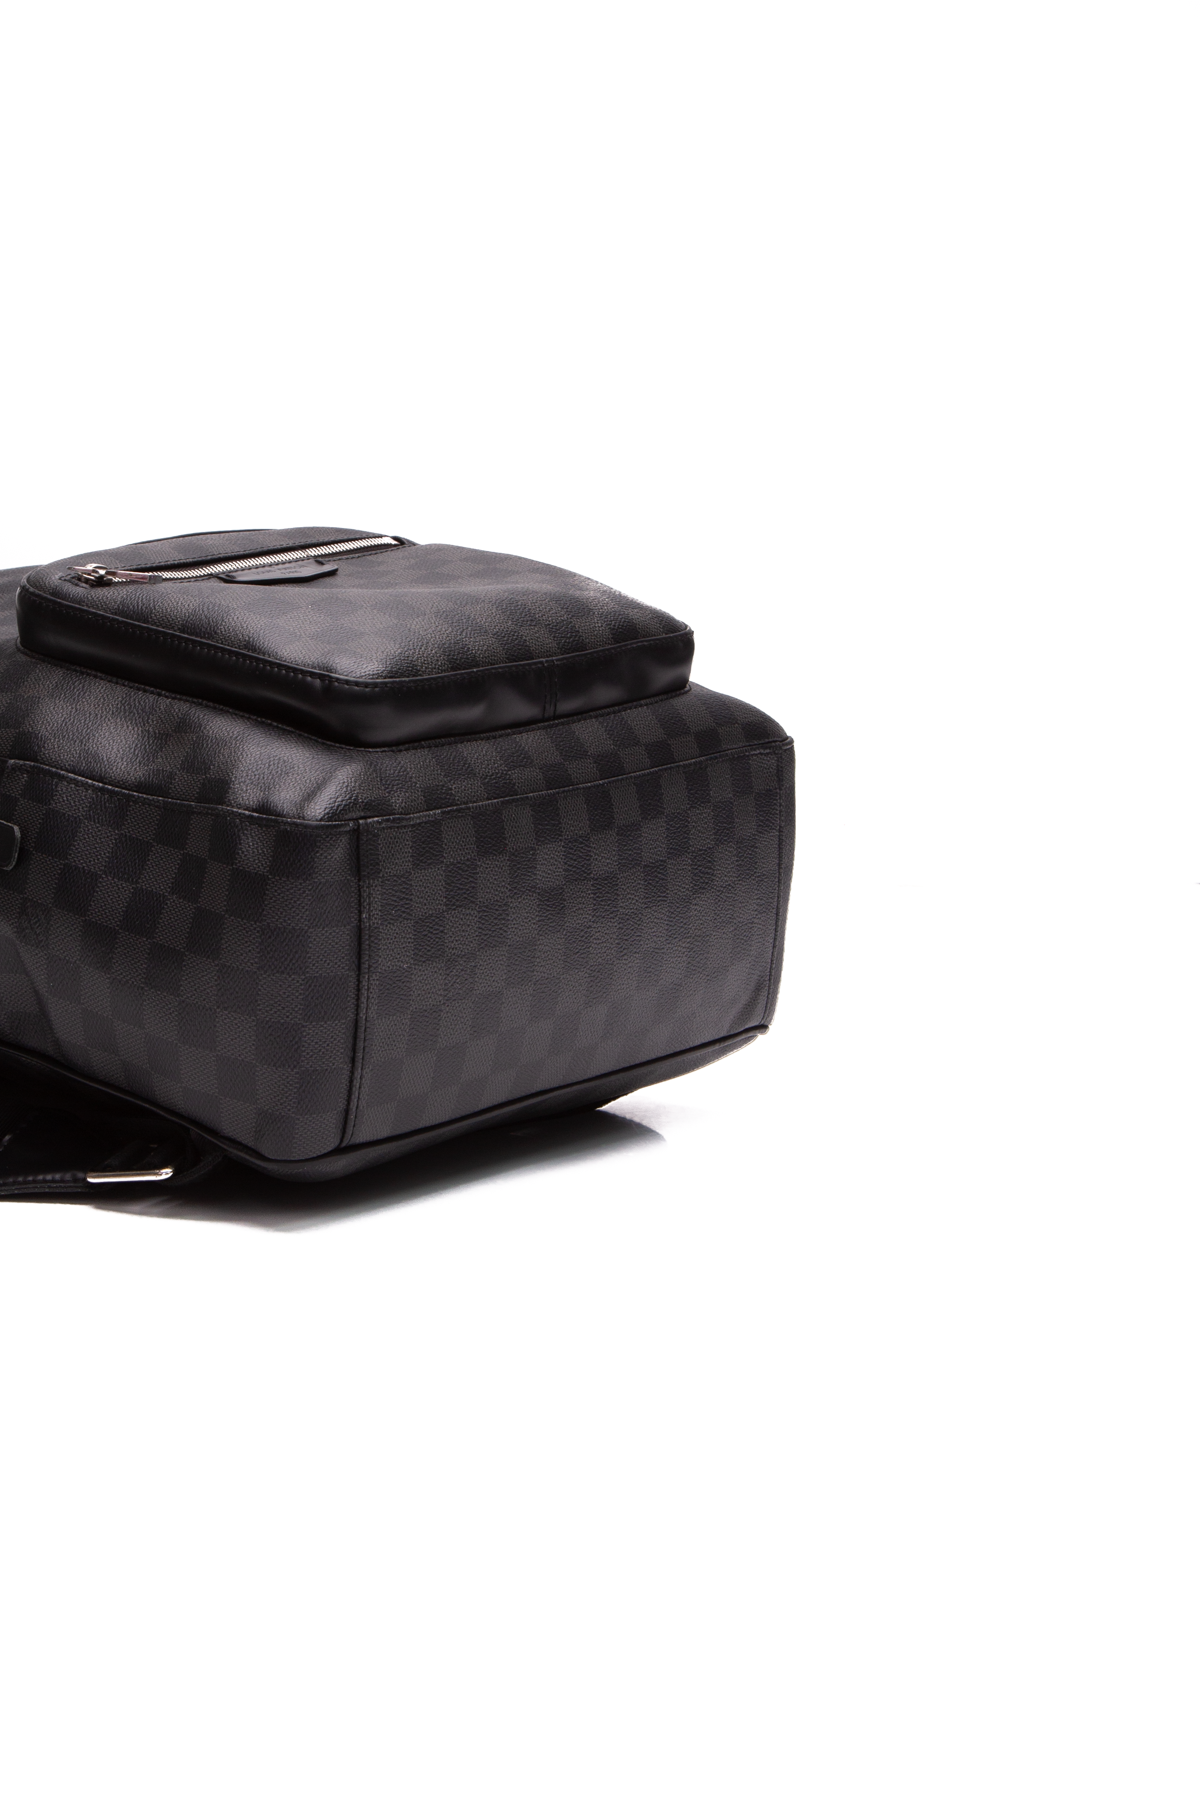 Louis Vuitton, Bags, Louis Vuitton Lv Josh Backpack Mens Damier Graphite  Canvas Leather Authentic Bag